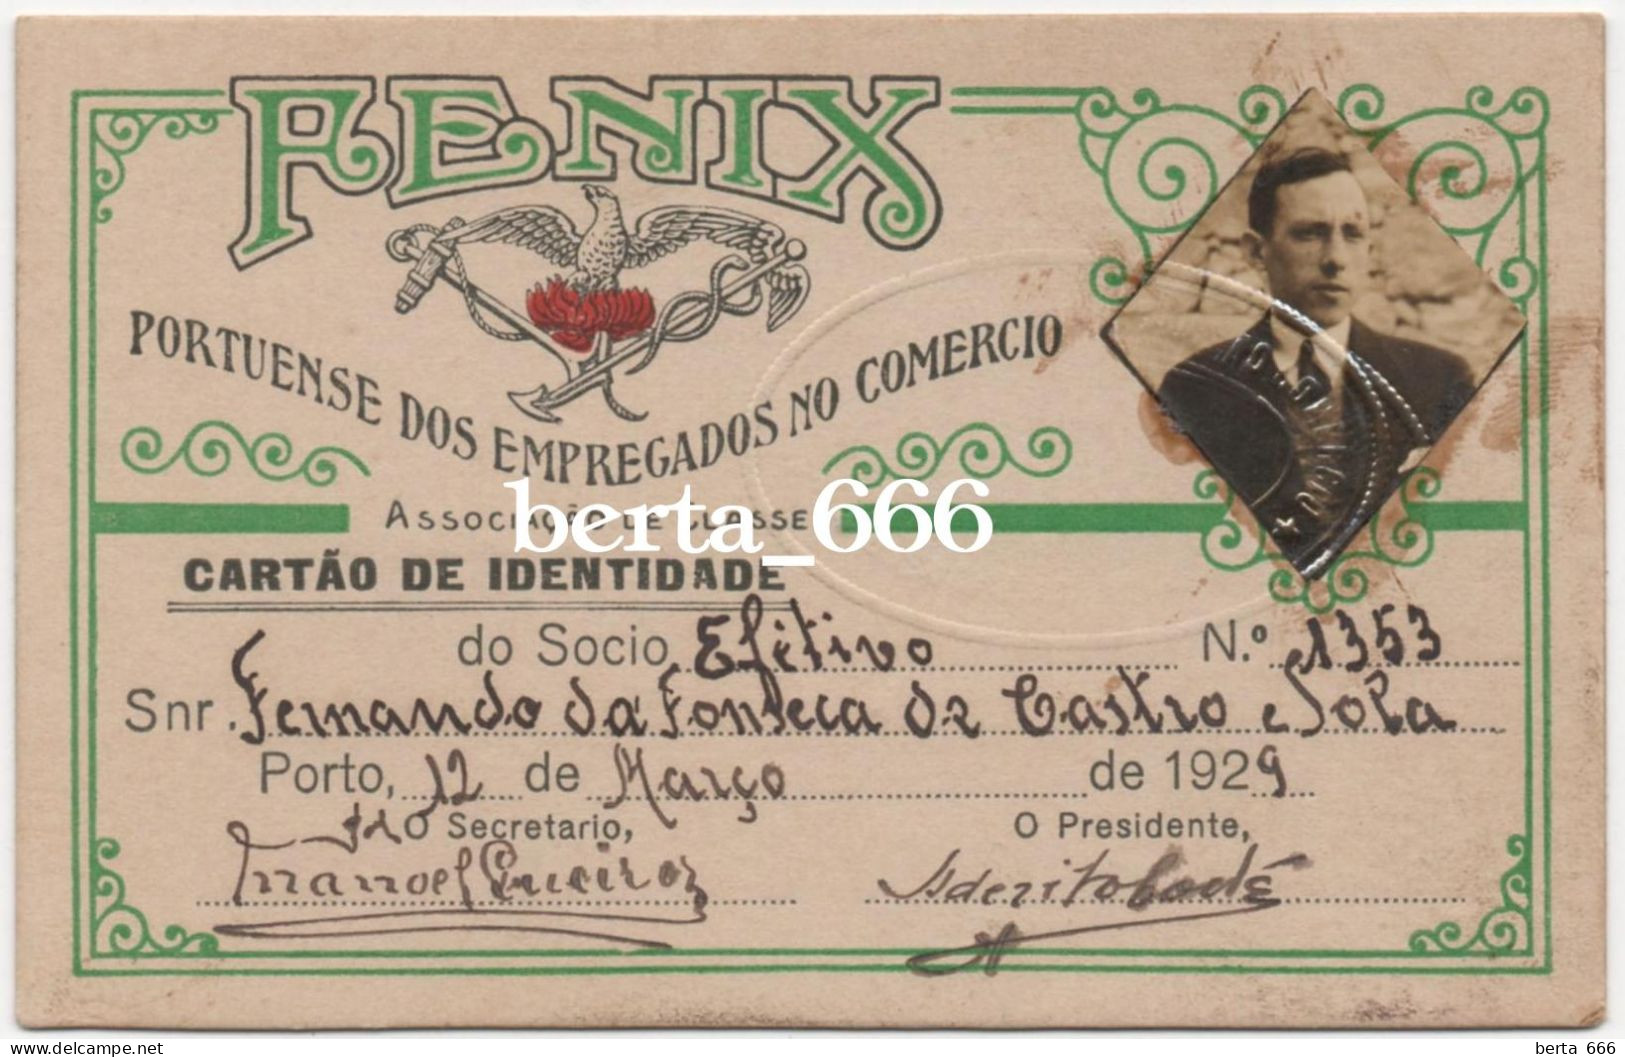 FENIX Associação Portuense Dos Empregados No Comércio * Cartão De Identidade De Sócio * 1929 - Membership Cards